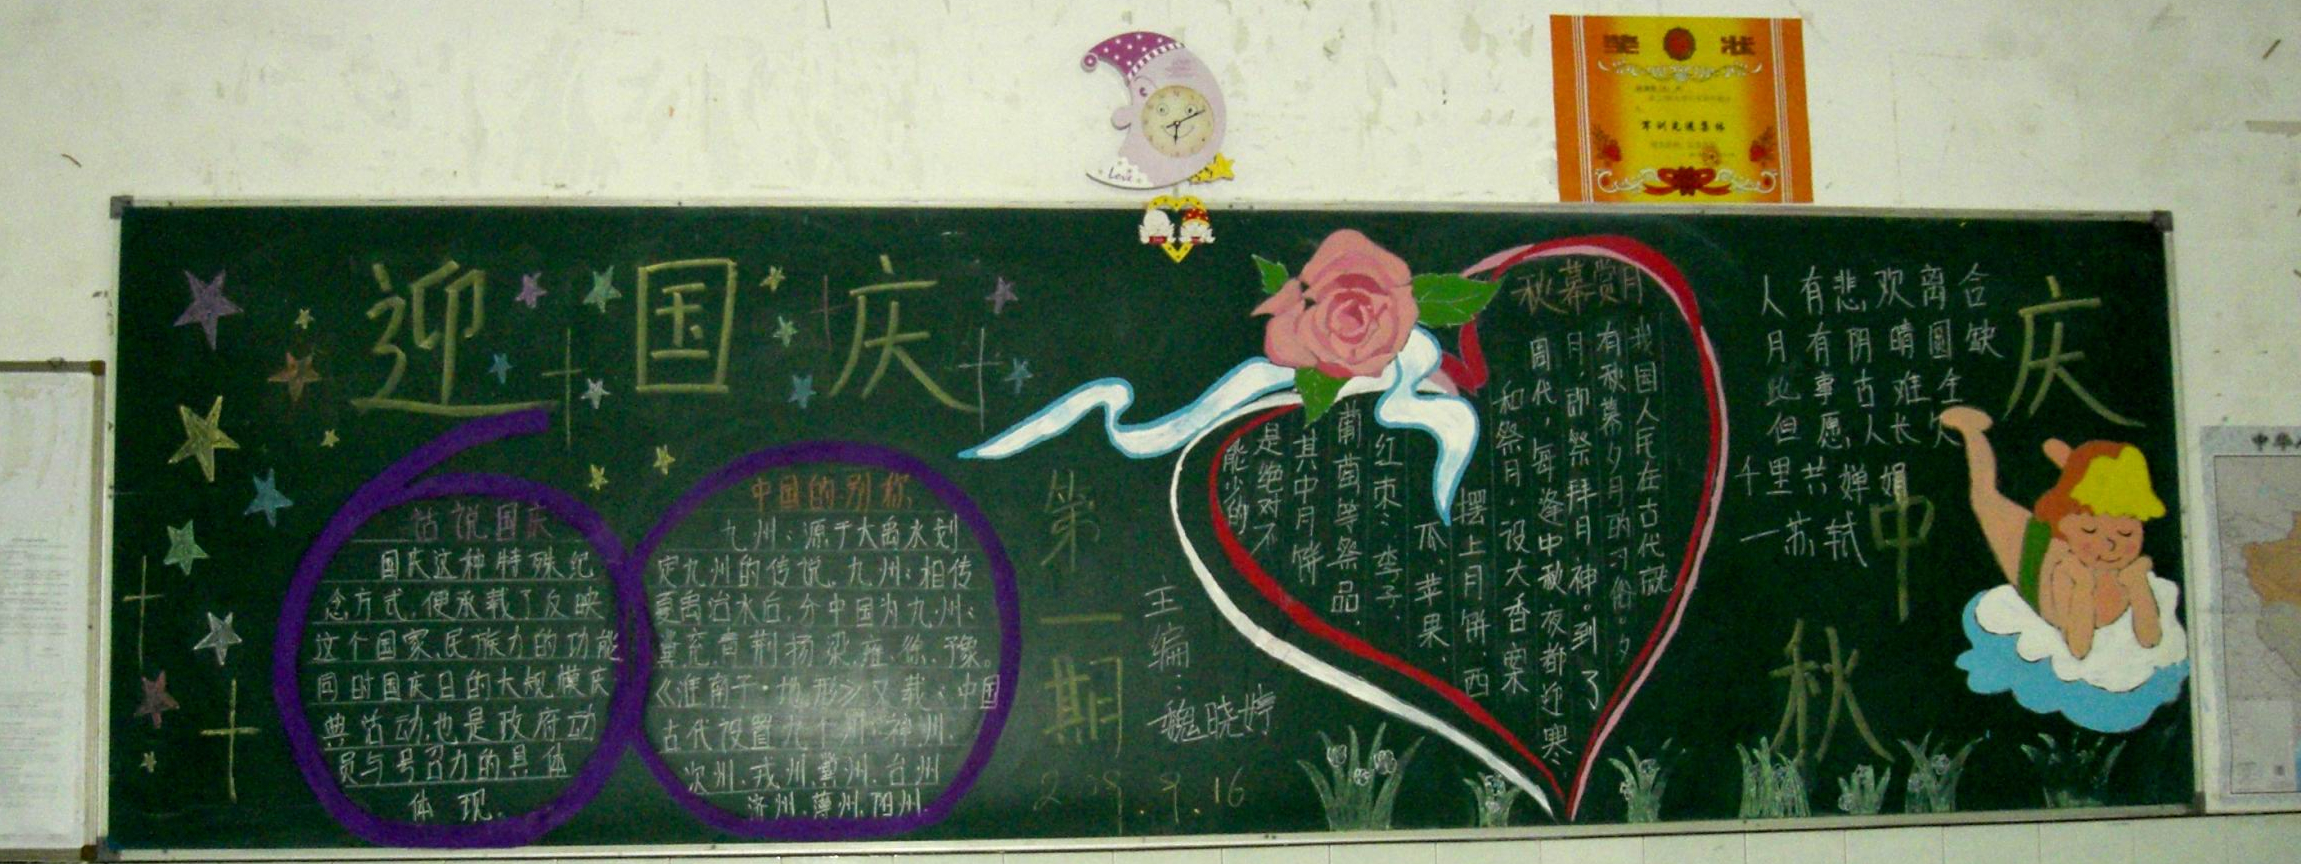 国庆节黑板报~国庆节快乐哈~ - 堆糖，美图壁纸兴趣社区